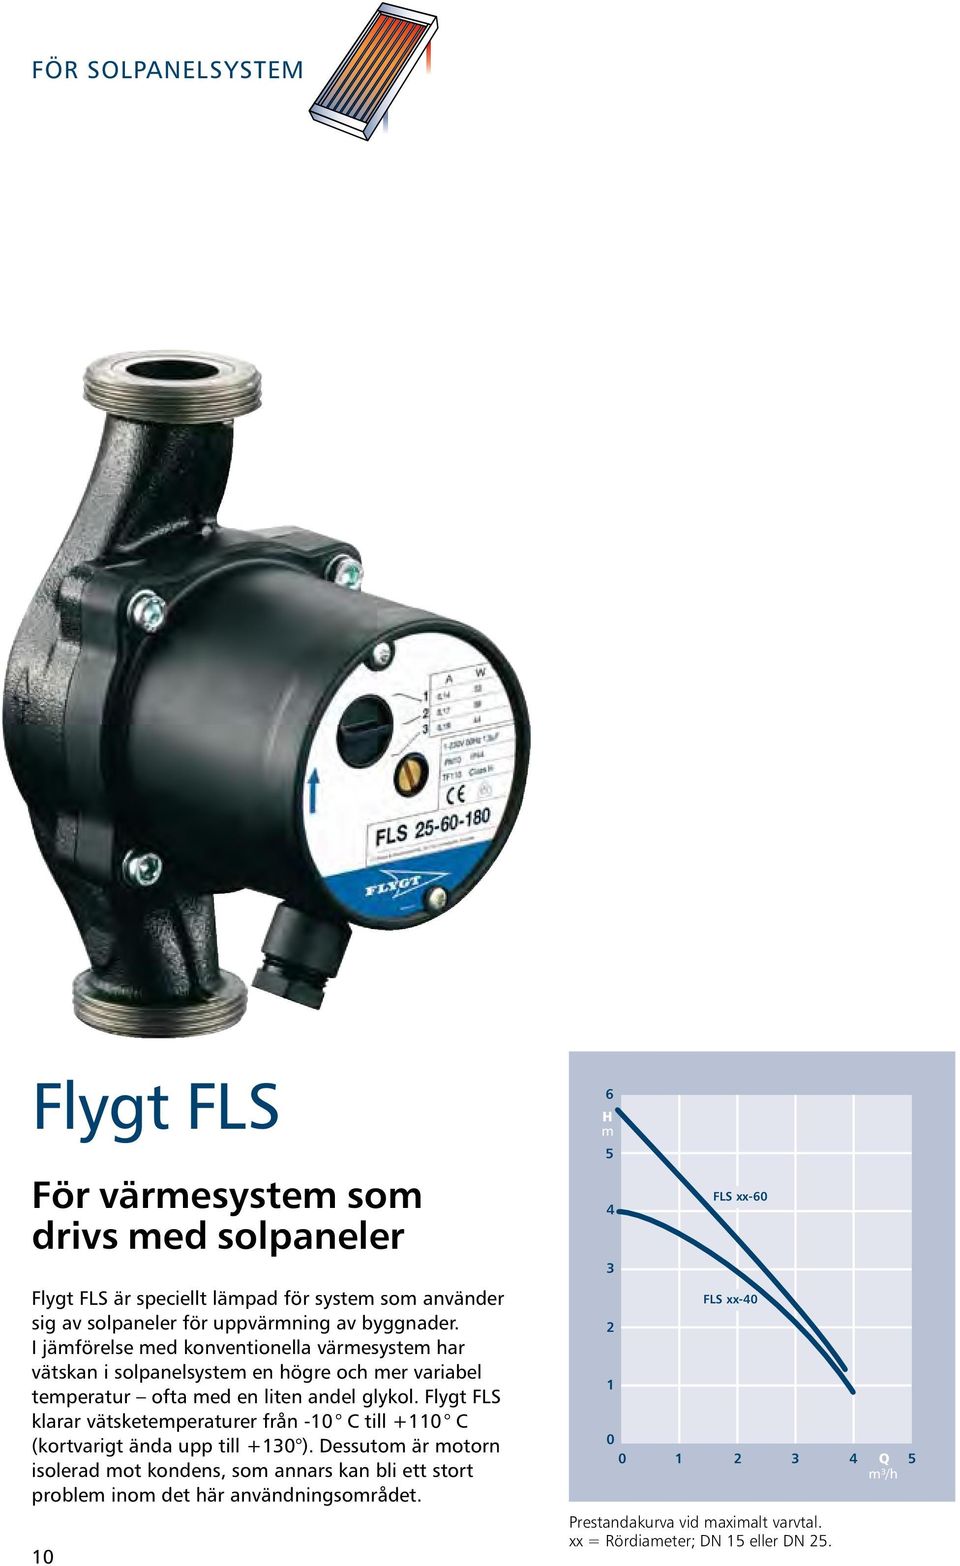 Flygt FLS klarar vätsketemperaturer från -10 C till +110 C (kortvarigt ända upp till +130 ).